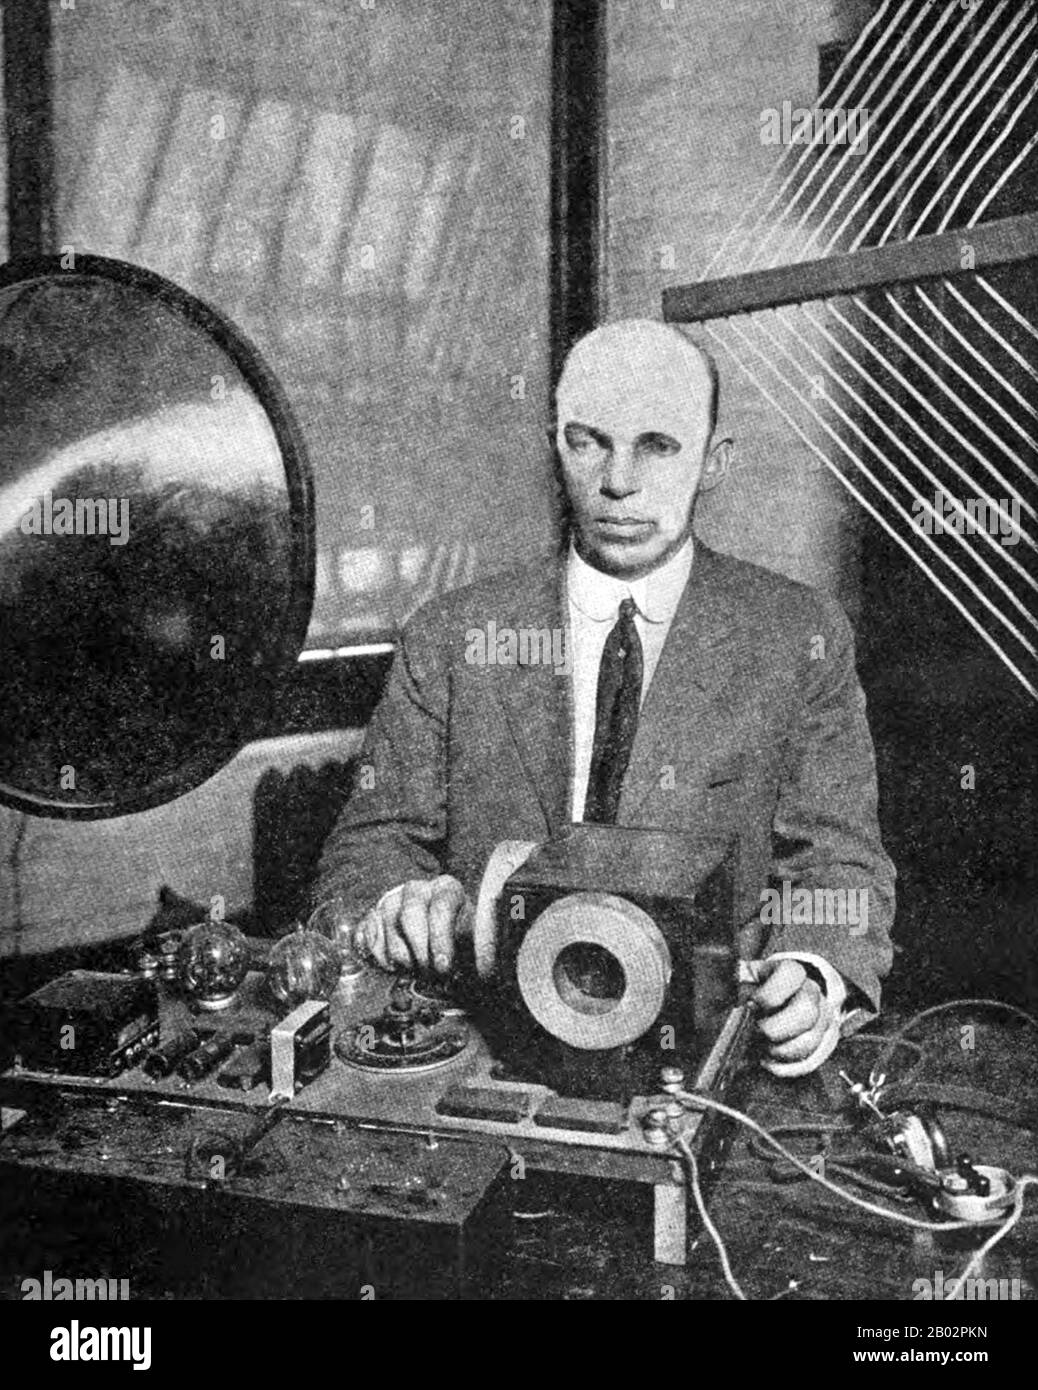 Edwin Howard Armstrong (18 de diciembre de 1890 – 31 de enero de 1954) fue  un ingeniero e inventor eléctrico estadounidense. Se le ha llamado "el  inventor más prolífico e influyente de